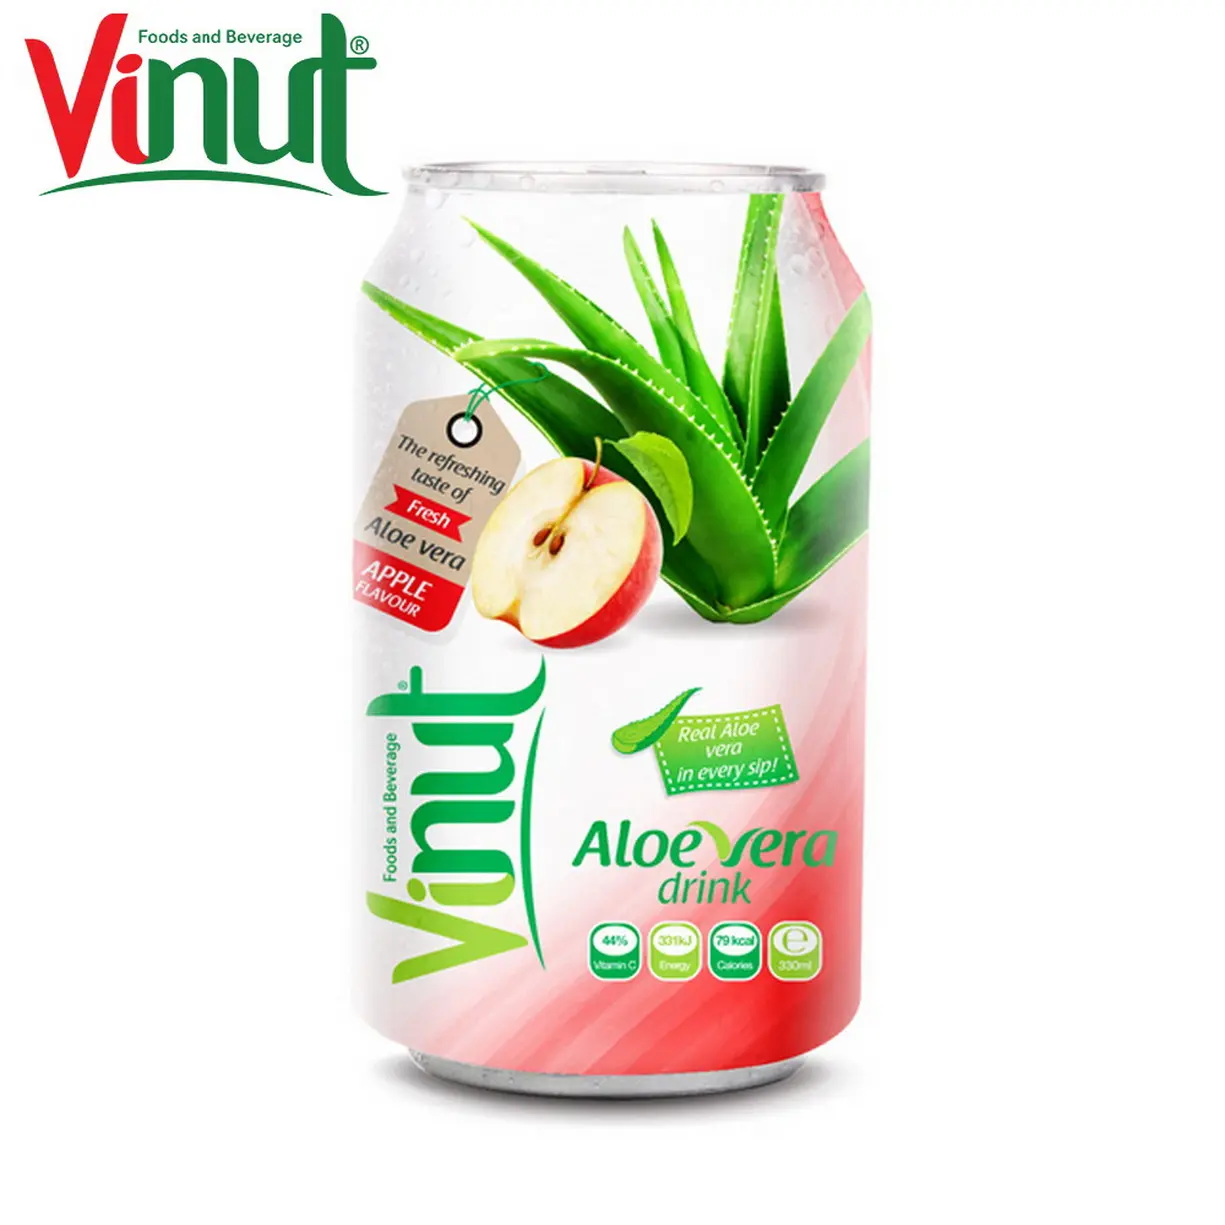 Vinut 3360ml Aloe Vera nước trái cây uống với Apple nước trái cây phân phối nhãn hiệu riêng phổ biến nước giải khát Giao hàng nhanh miễn phí lấy mẫu